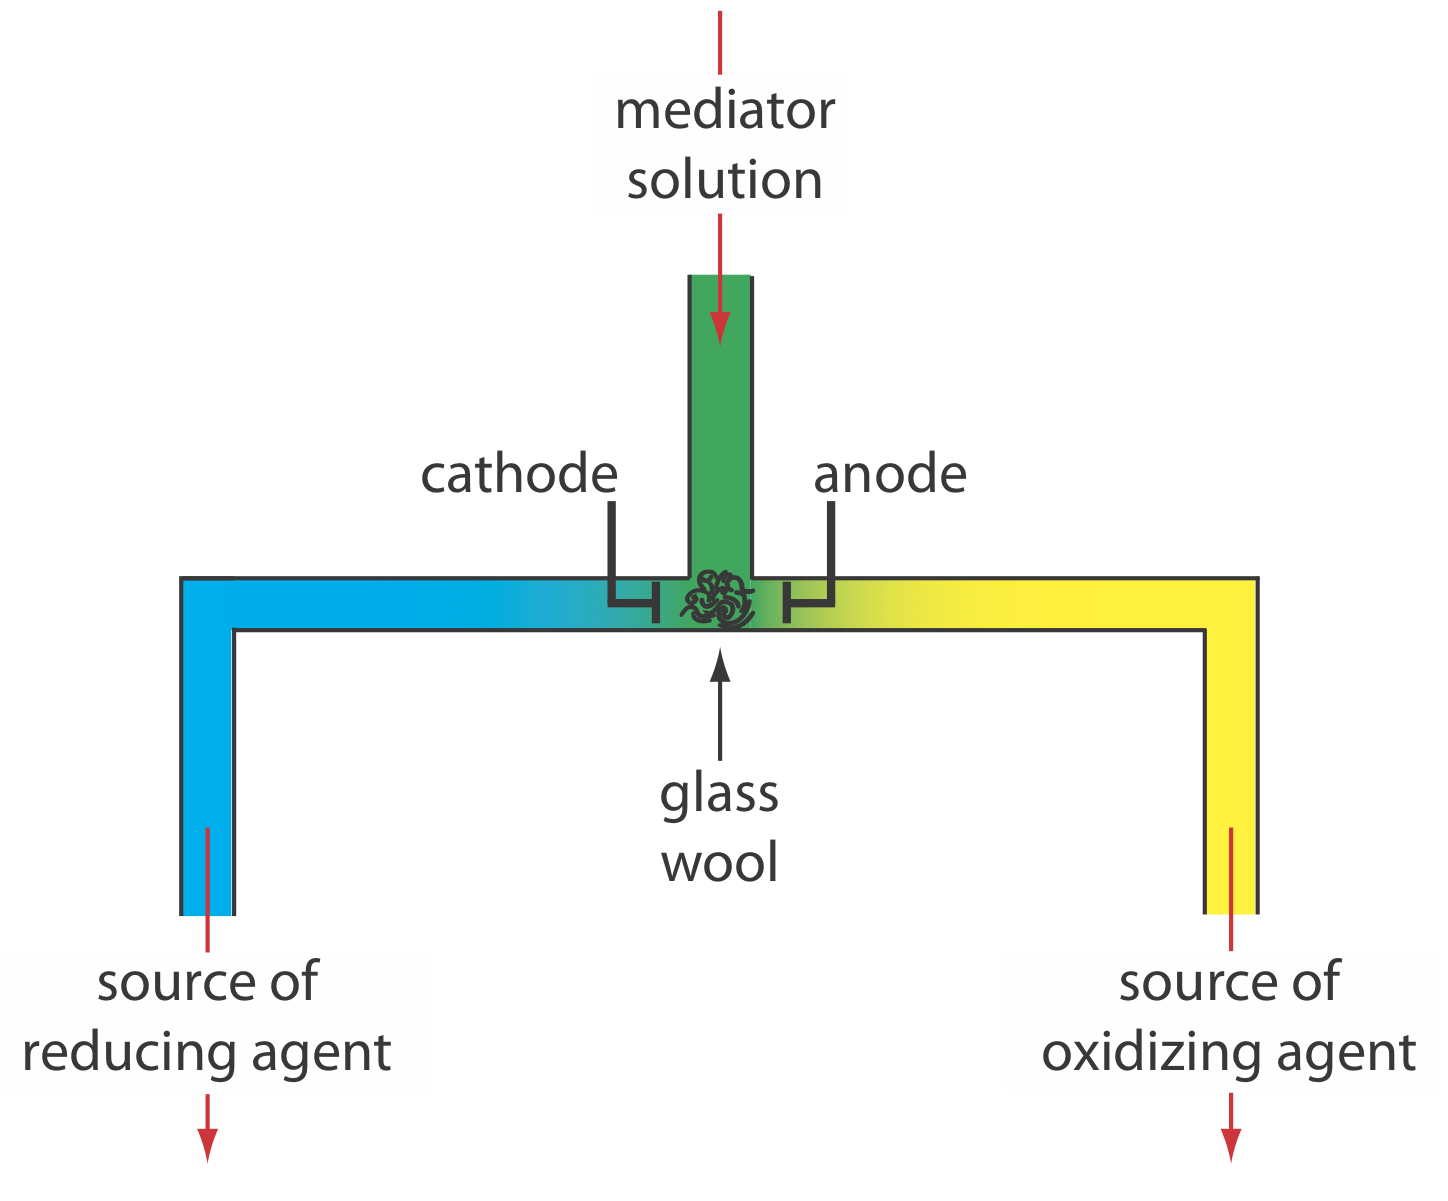 Un ejemplo de un dispositivo para la generación externa de agentes oxidantes y reductores para coulometría de corriente controlada. Una solución que contiene el mediador fluye hacia una celda electroquímica de pequeño volumen. Los productos de oxidación resultantes, que se forman en el ánodo, fluyen hacia la derecha y sirven como agente oxidante. La reducción en el cátodo genera un agente reductor.